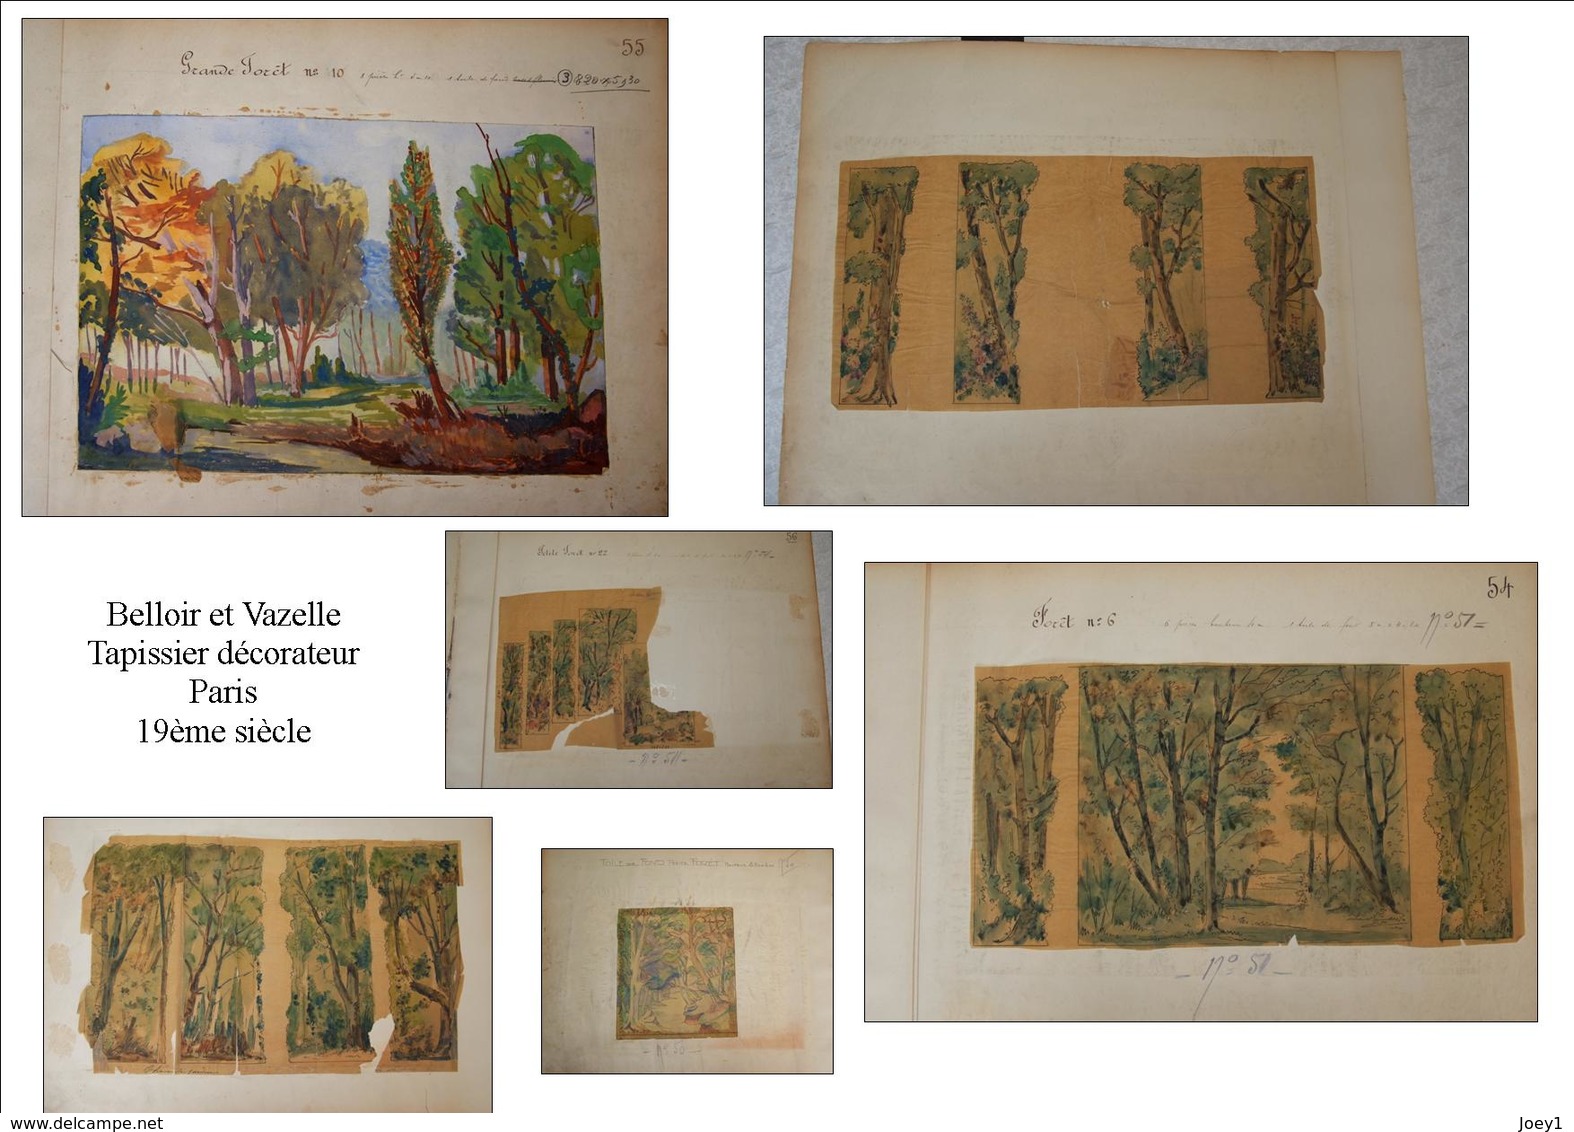 1 ensemble de dessin Belloir et Vazelle peintres décorateurs du 19ème siècle